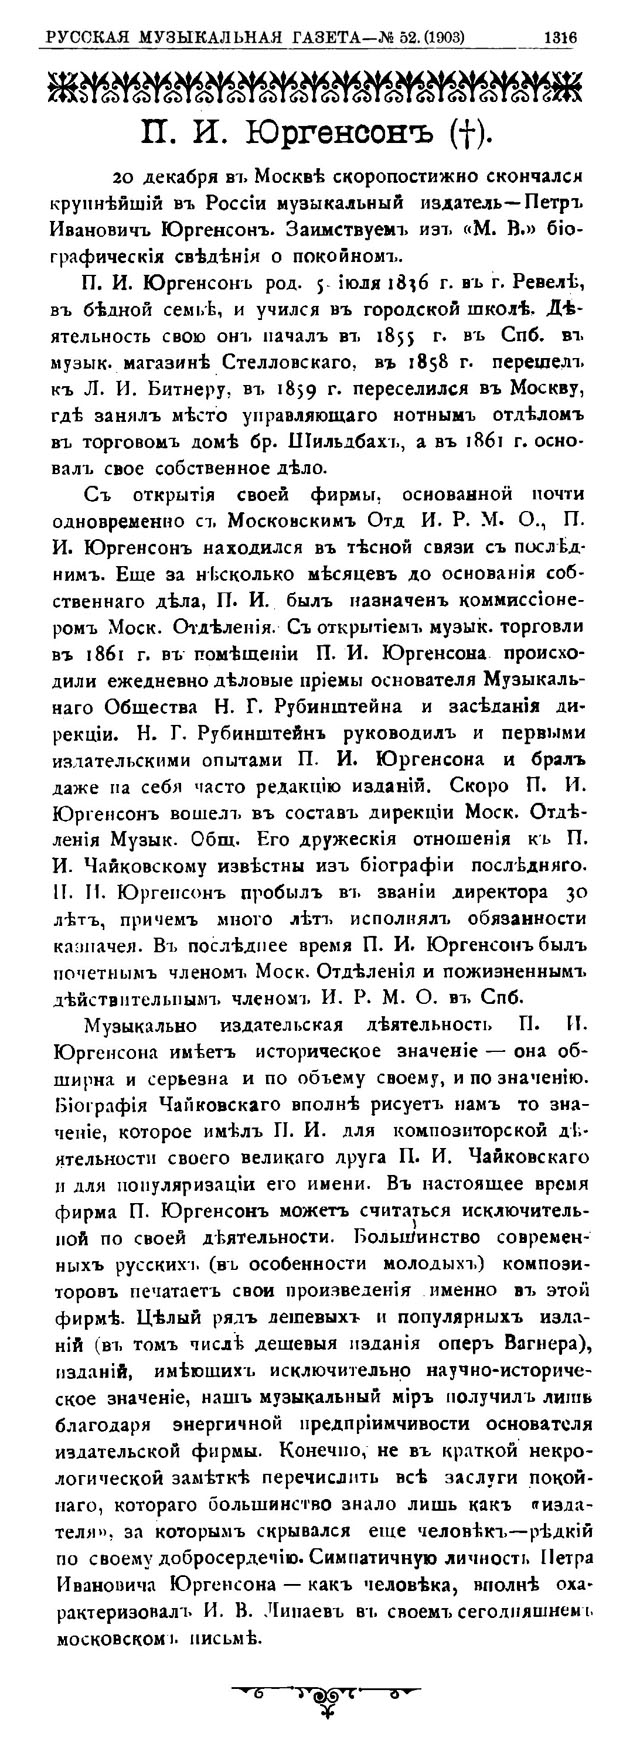 П. И. Юргенсон [Некролог] // Русская музыкальная газета. — 1903. — № 52.